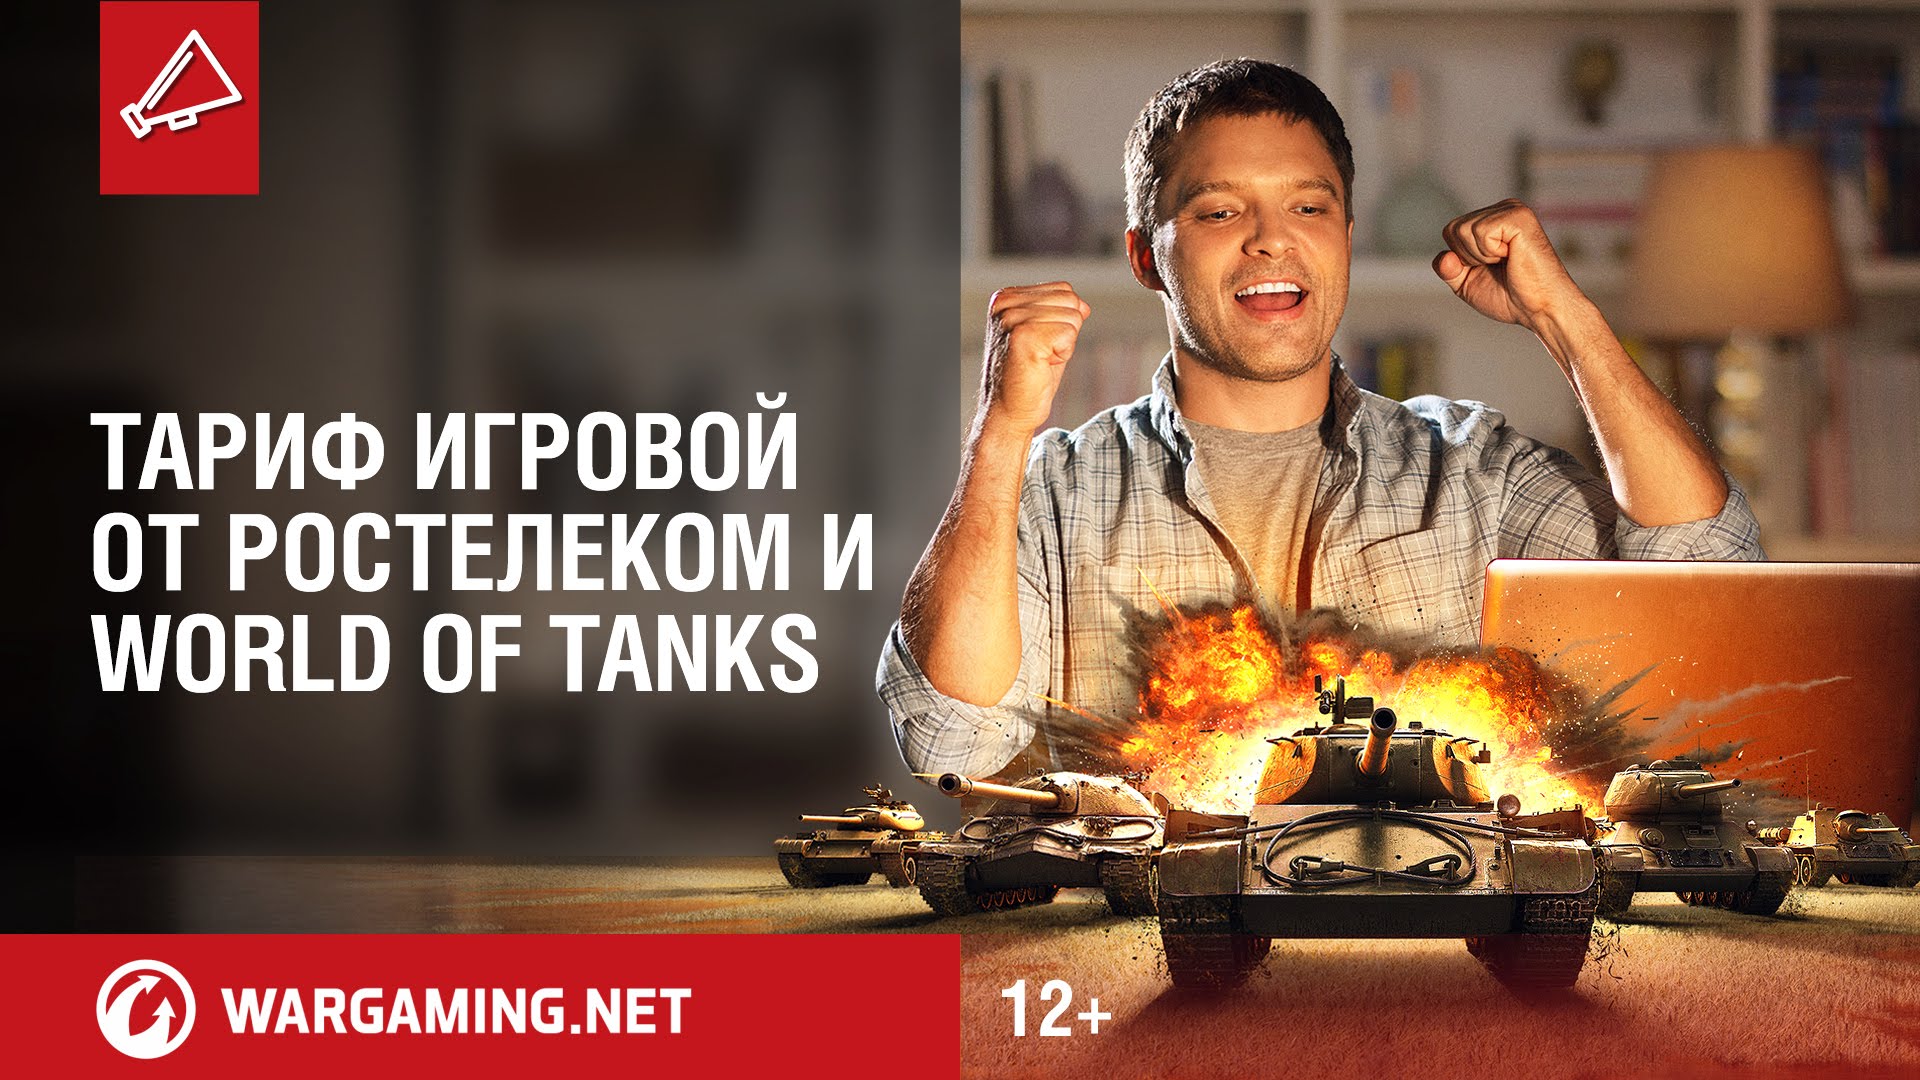 Ростелеком тариф Игровой World of Tanks: премиум аккаунт